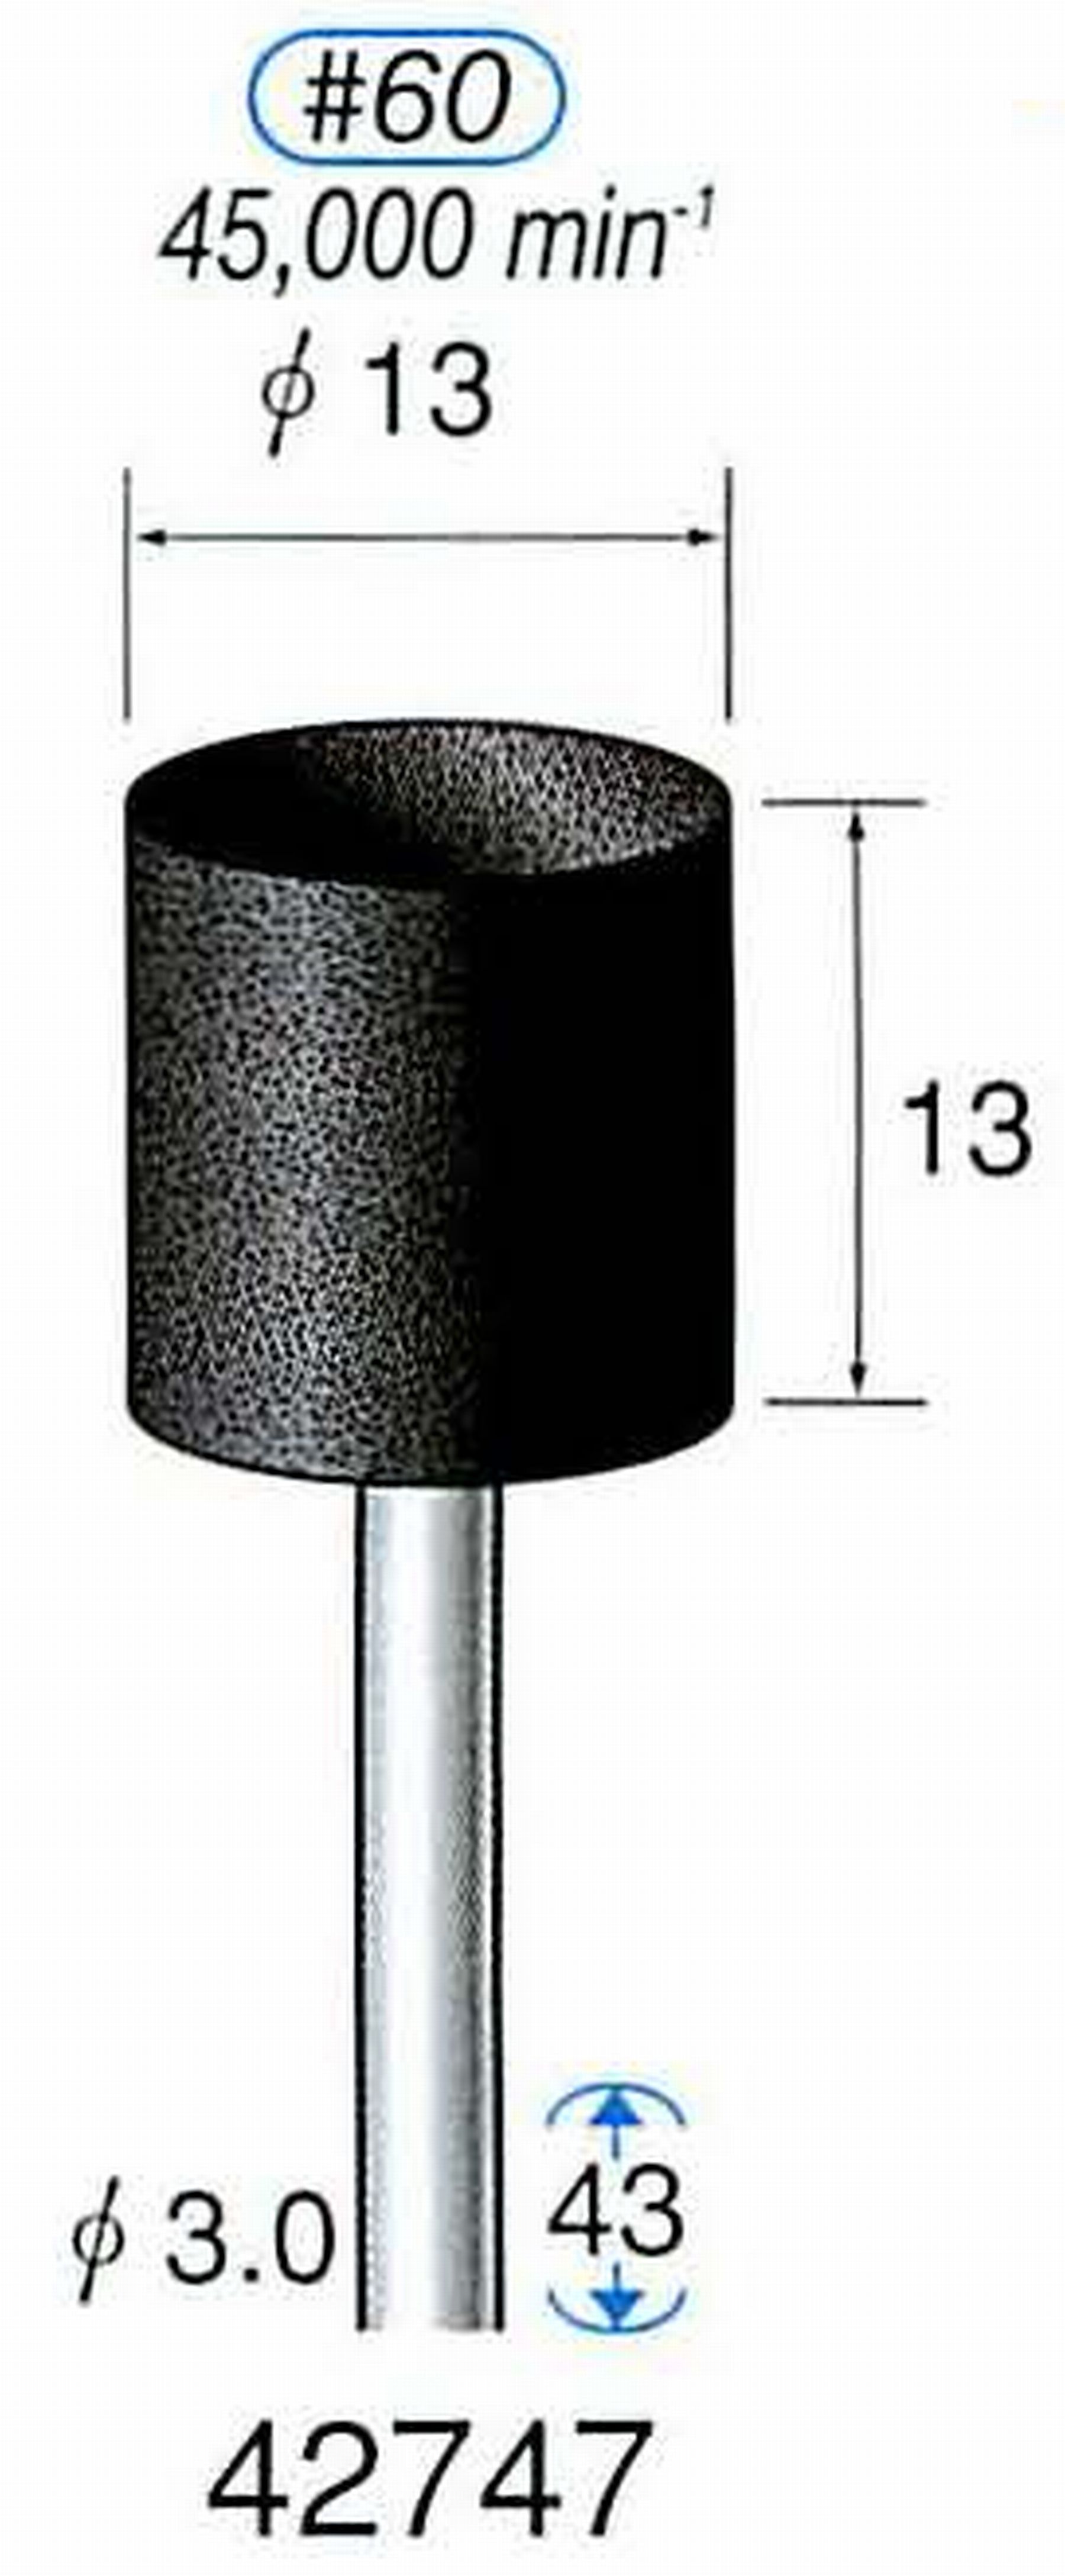 ナカニシ/NAKANISHI 軸付砥石(A砥粒) ブラック砥石 軸径(シャンク) φ3.0mm 42747